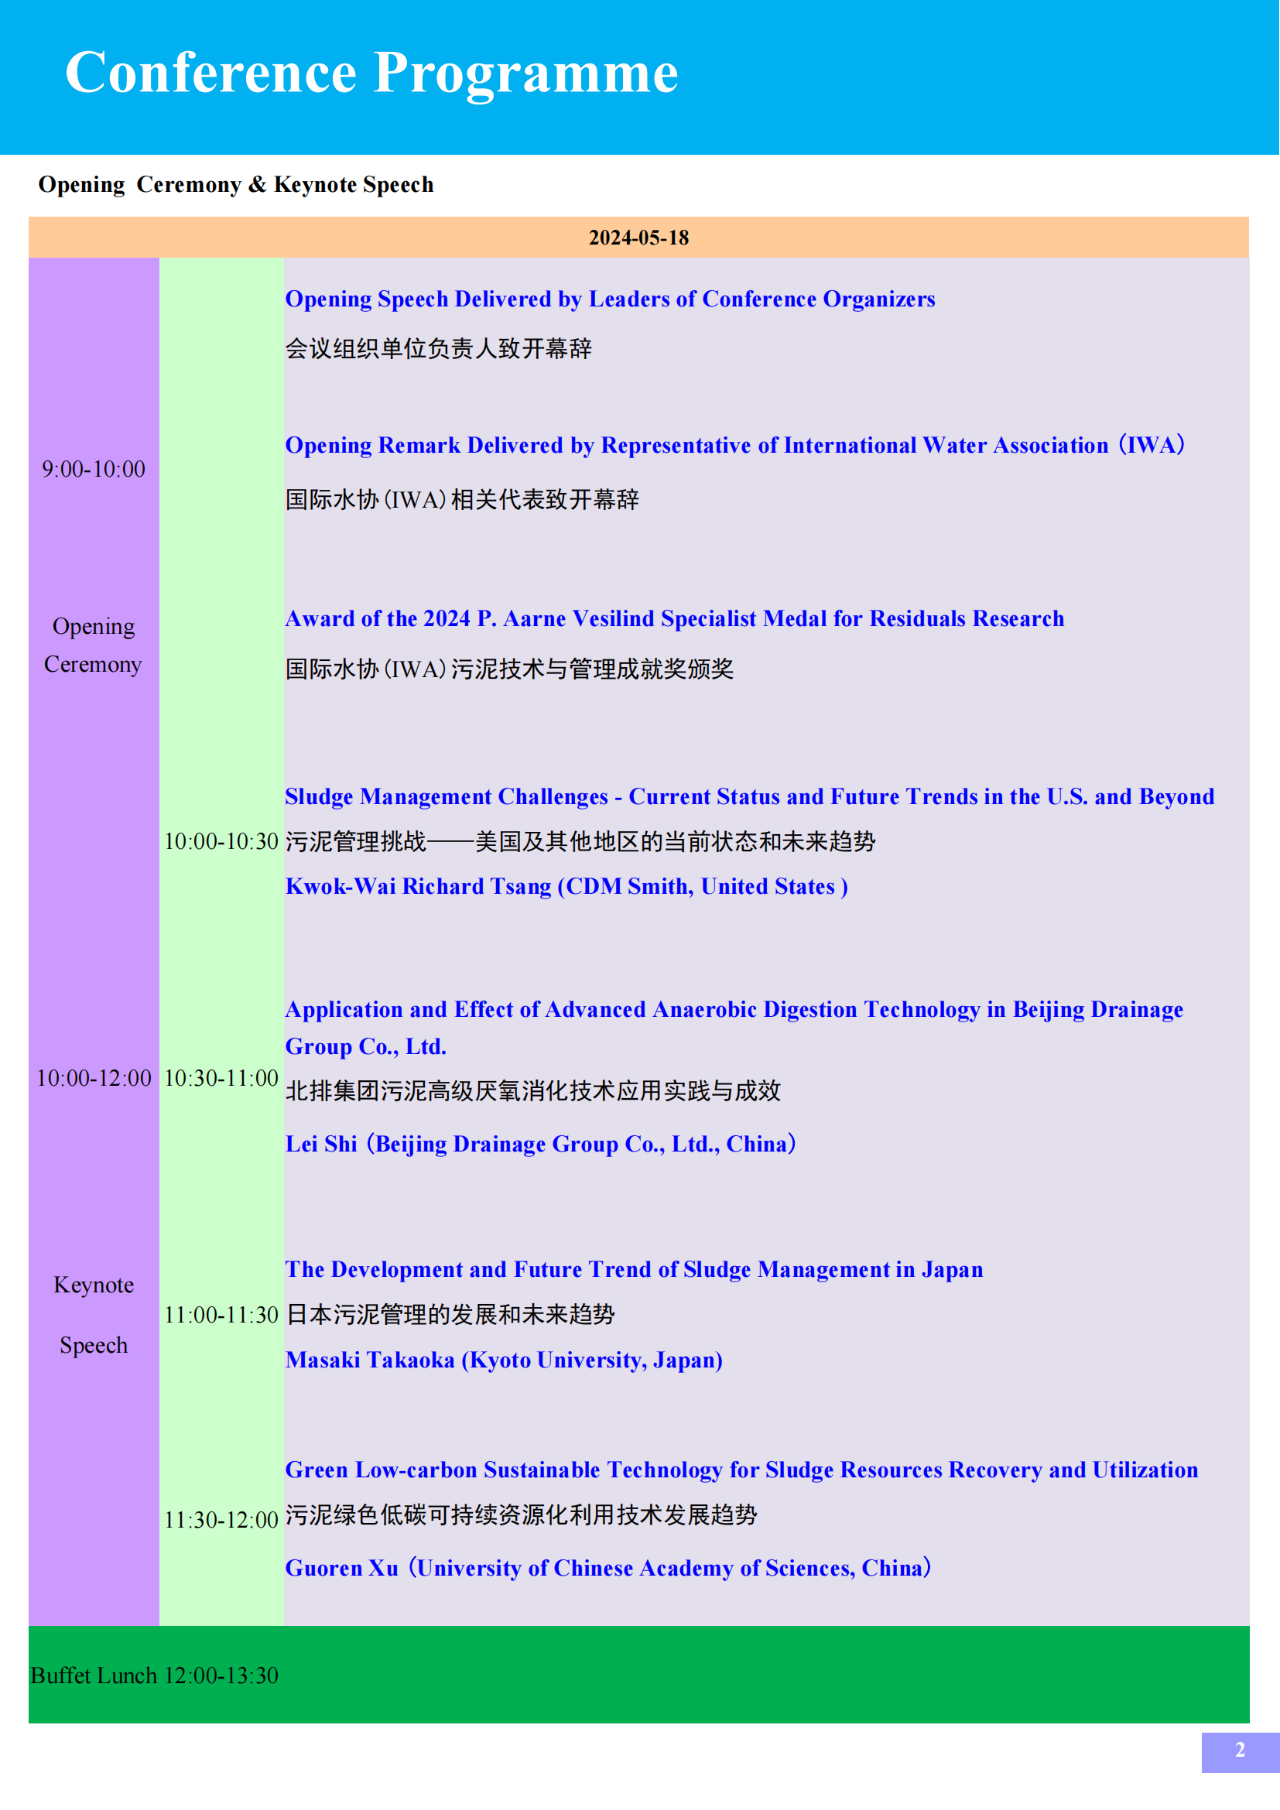 【日程】国际水协第18届可持续污泥技术与管理会议